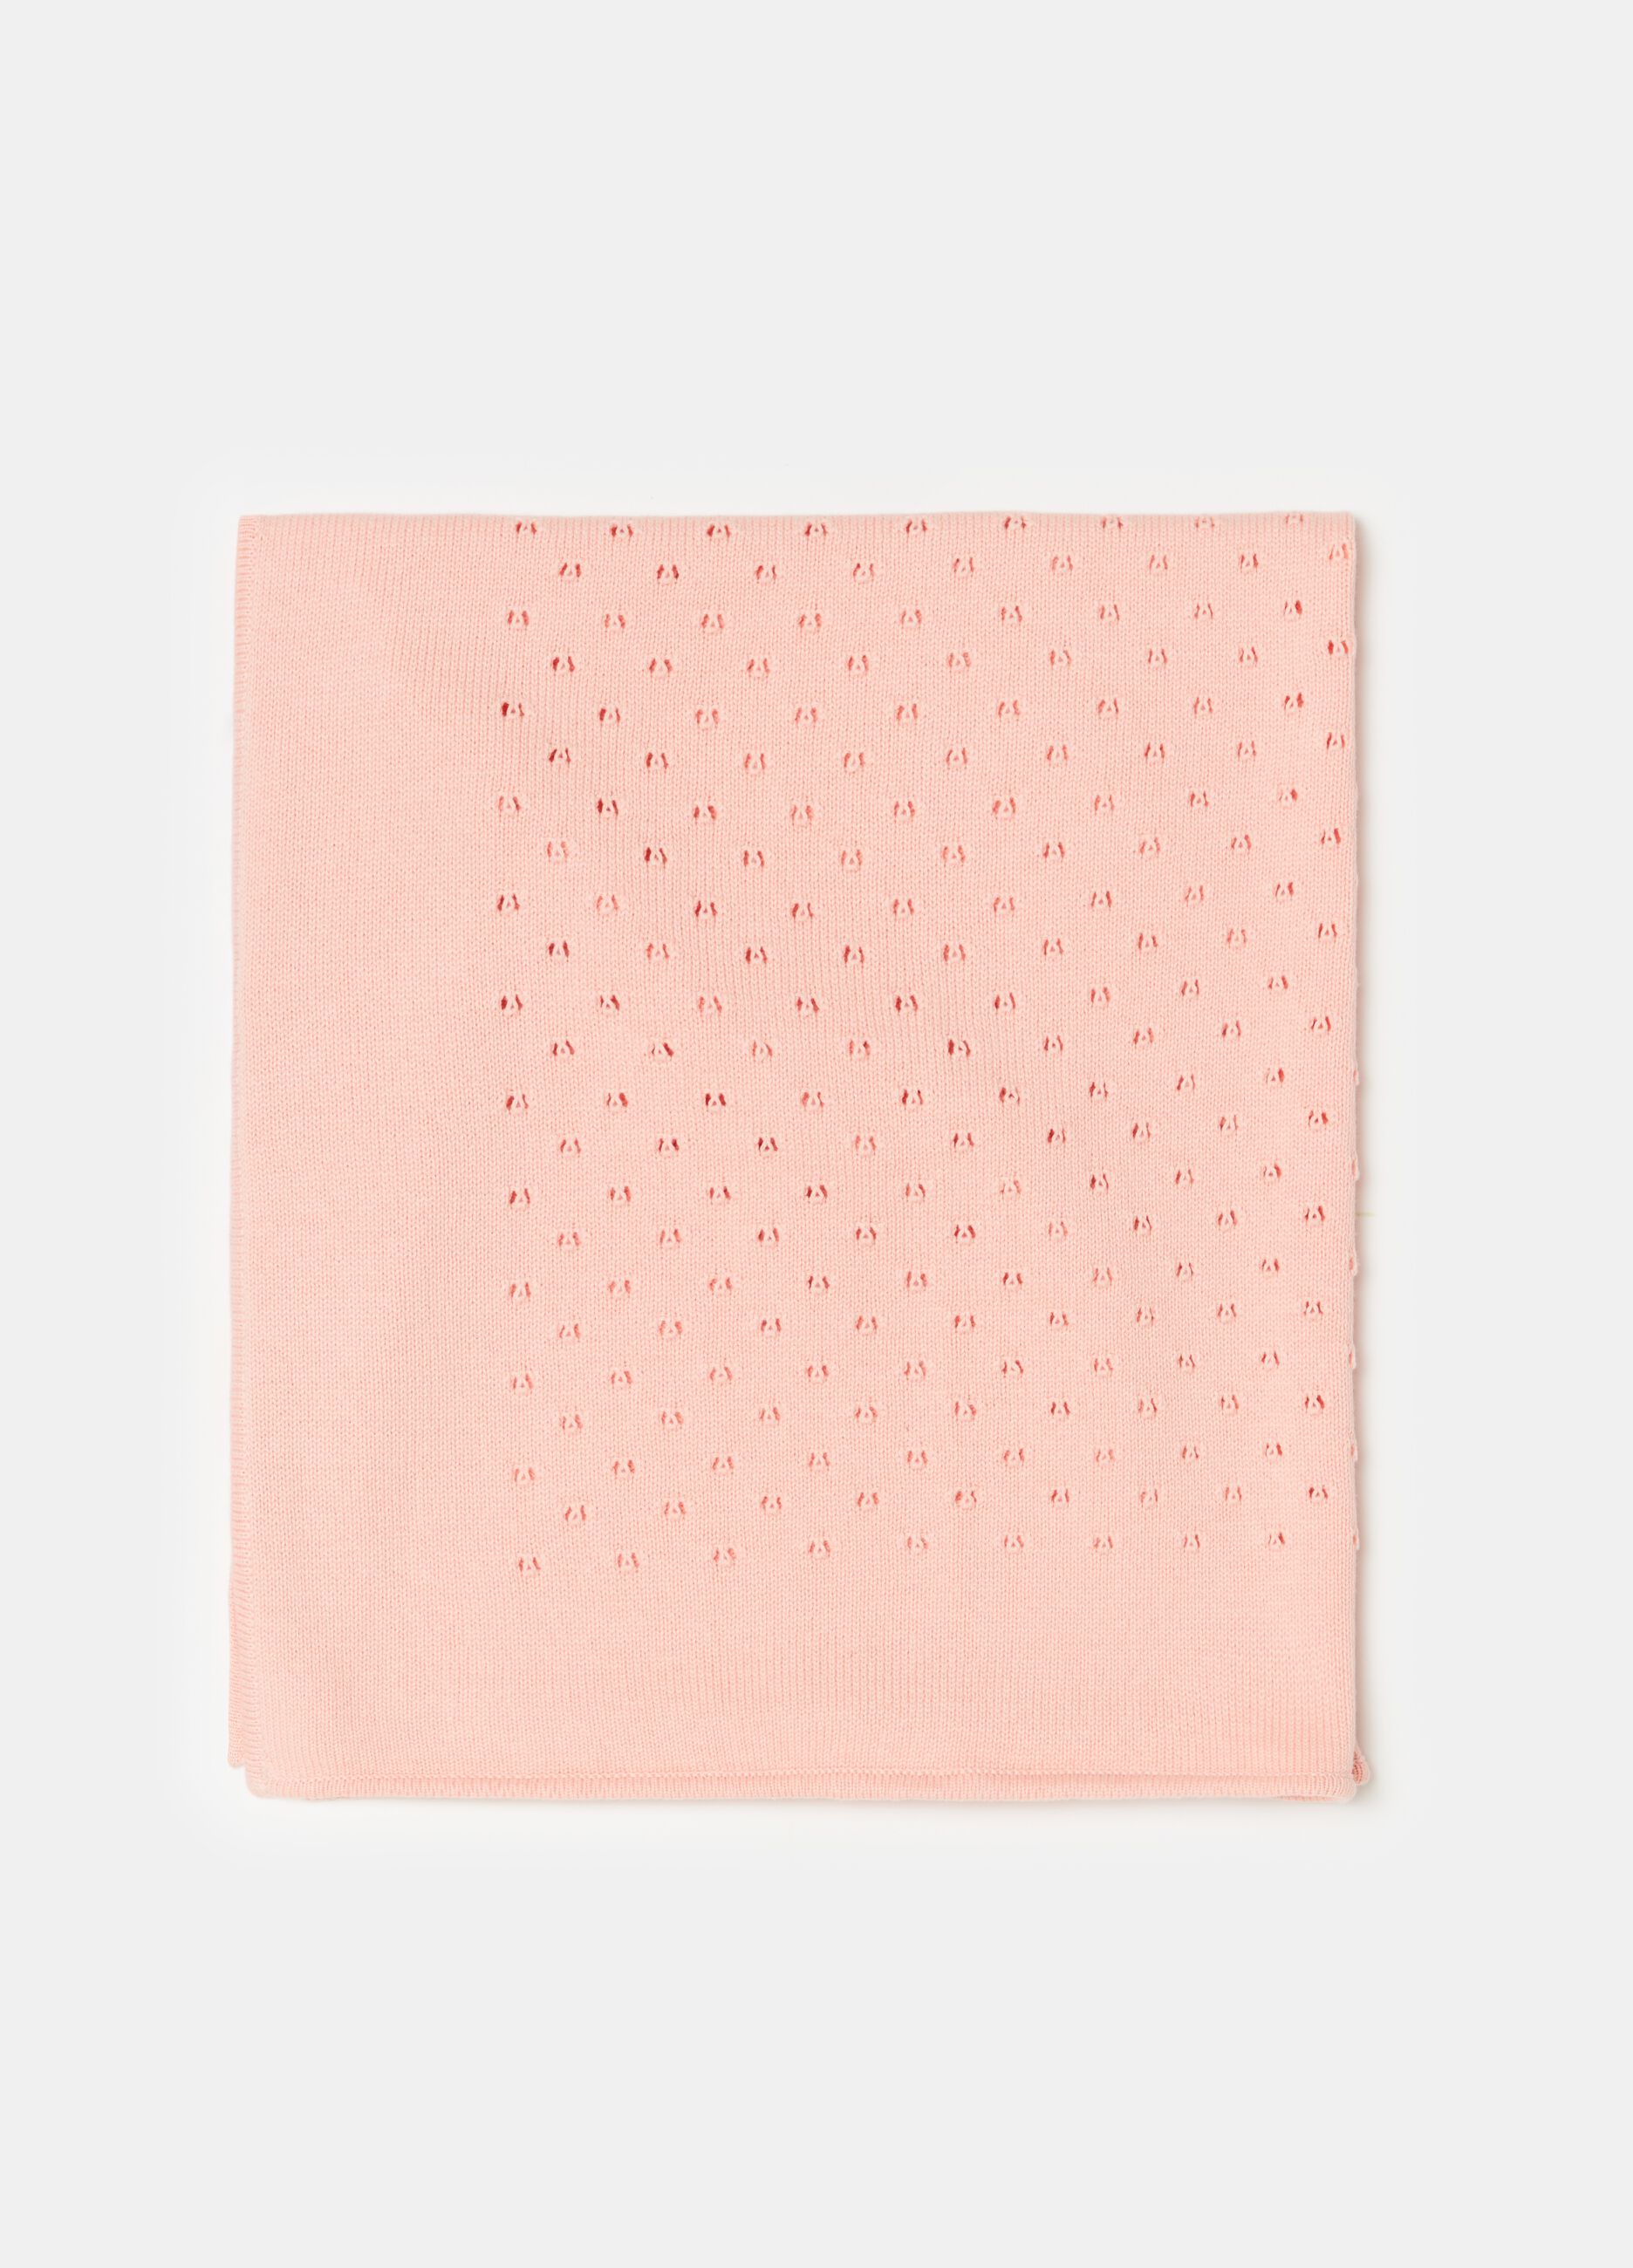 Blanket with openwork design